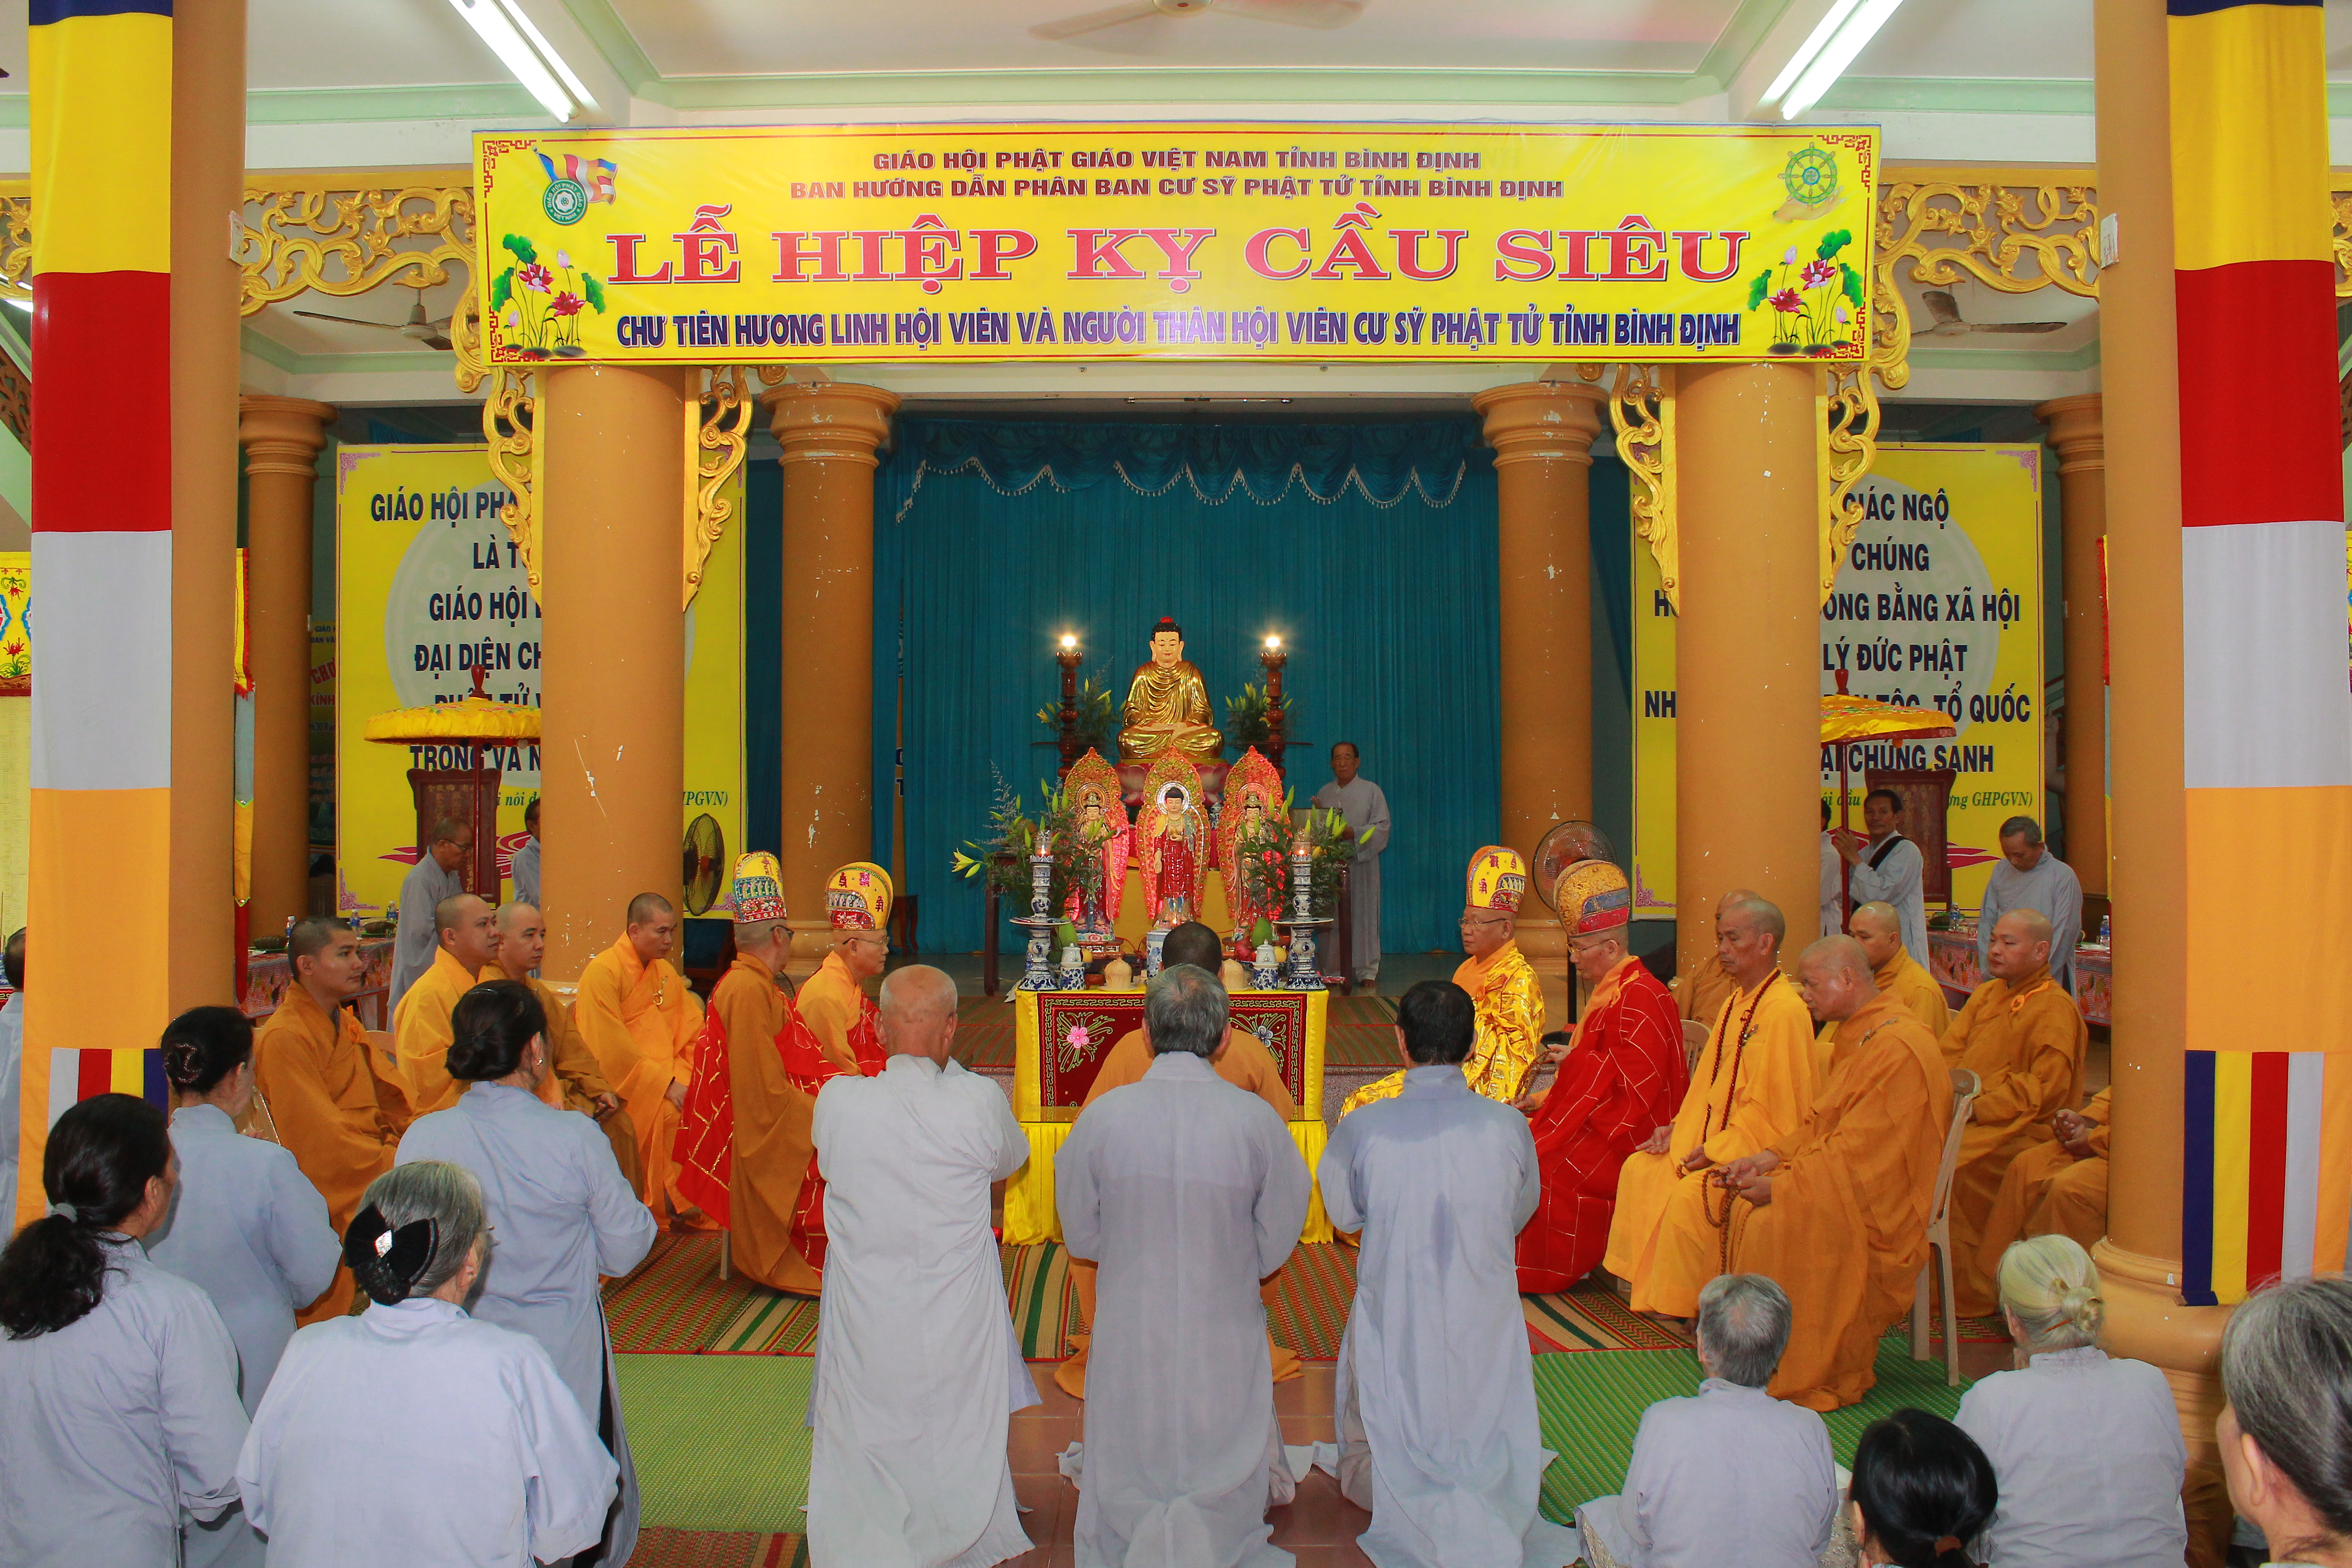 Phân ban Cư sĩ Phật tử tỉnh tổ chức lễ Hiệp kỵ cầu siêu 2019